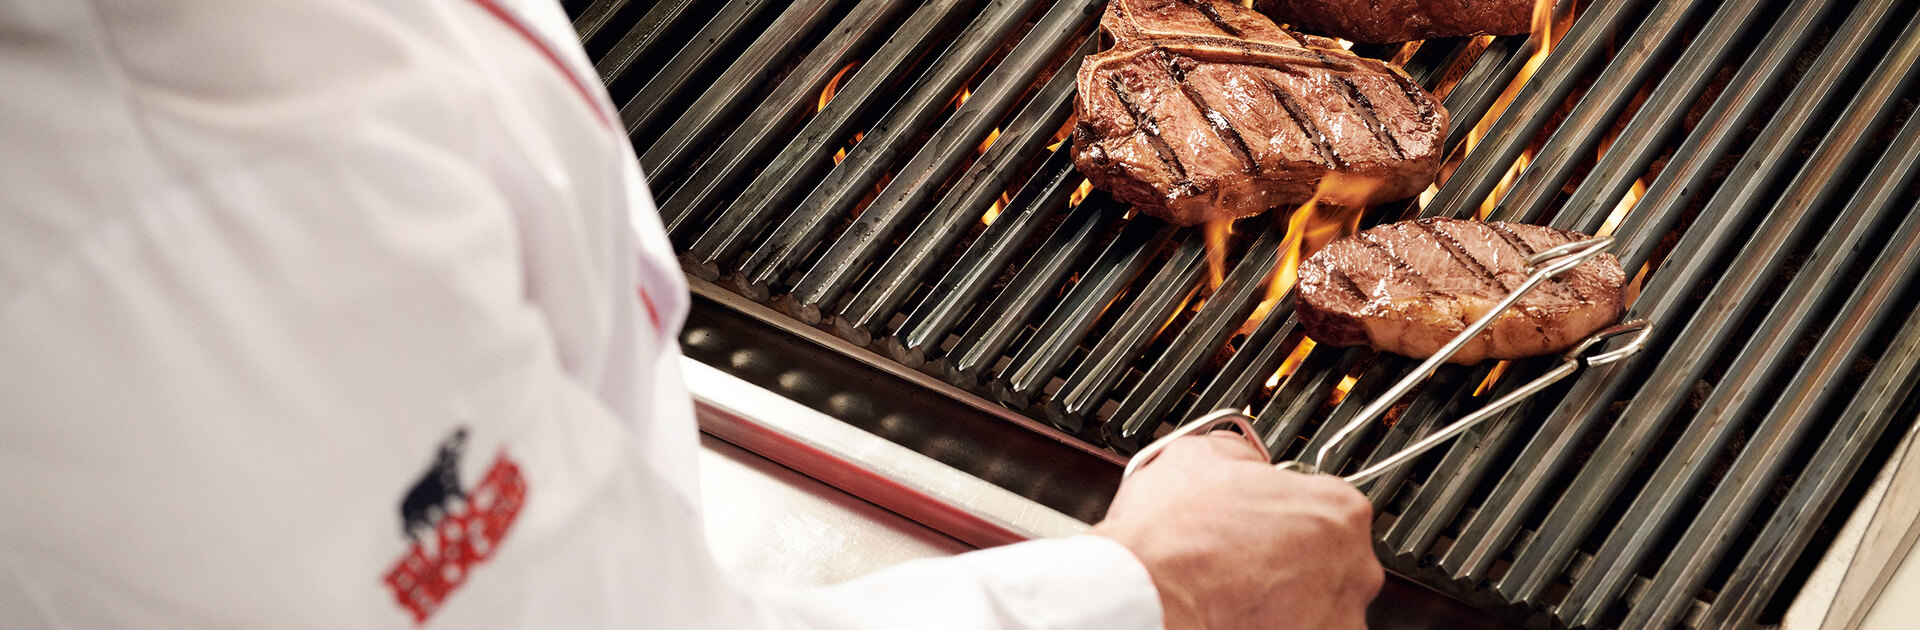 Blick über die Schulter eines Grillers, der eine Steakzange in der Hand hält und gerade ein Steak auf einem flammenden Grill wendet.